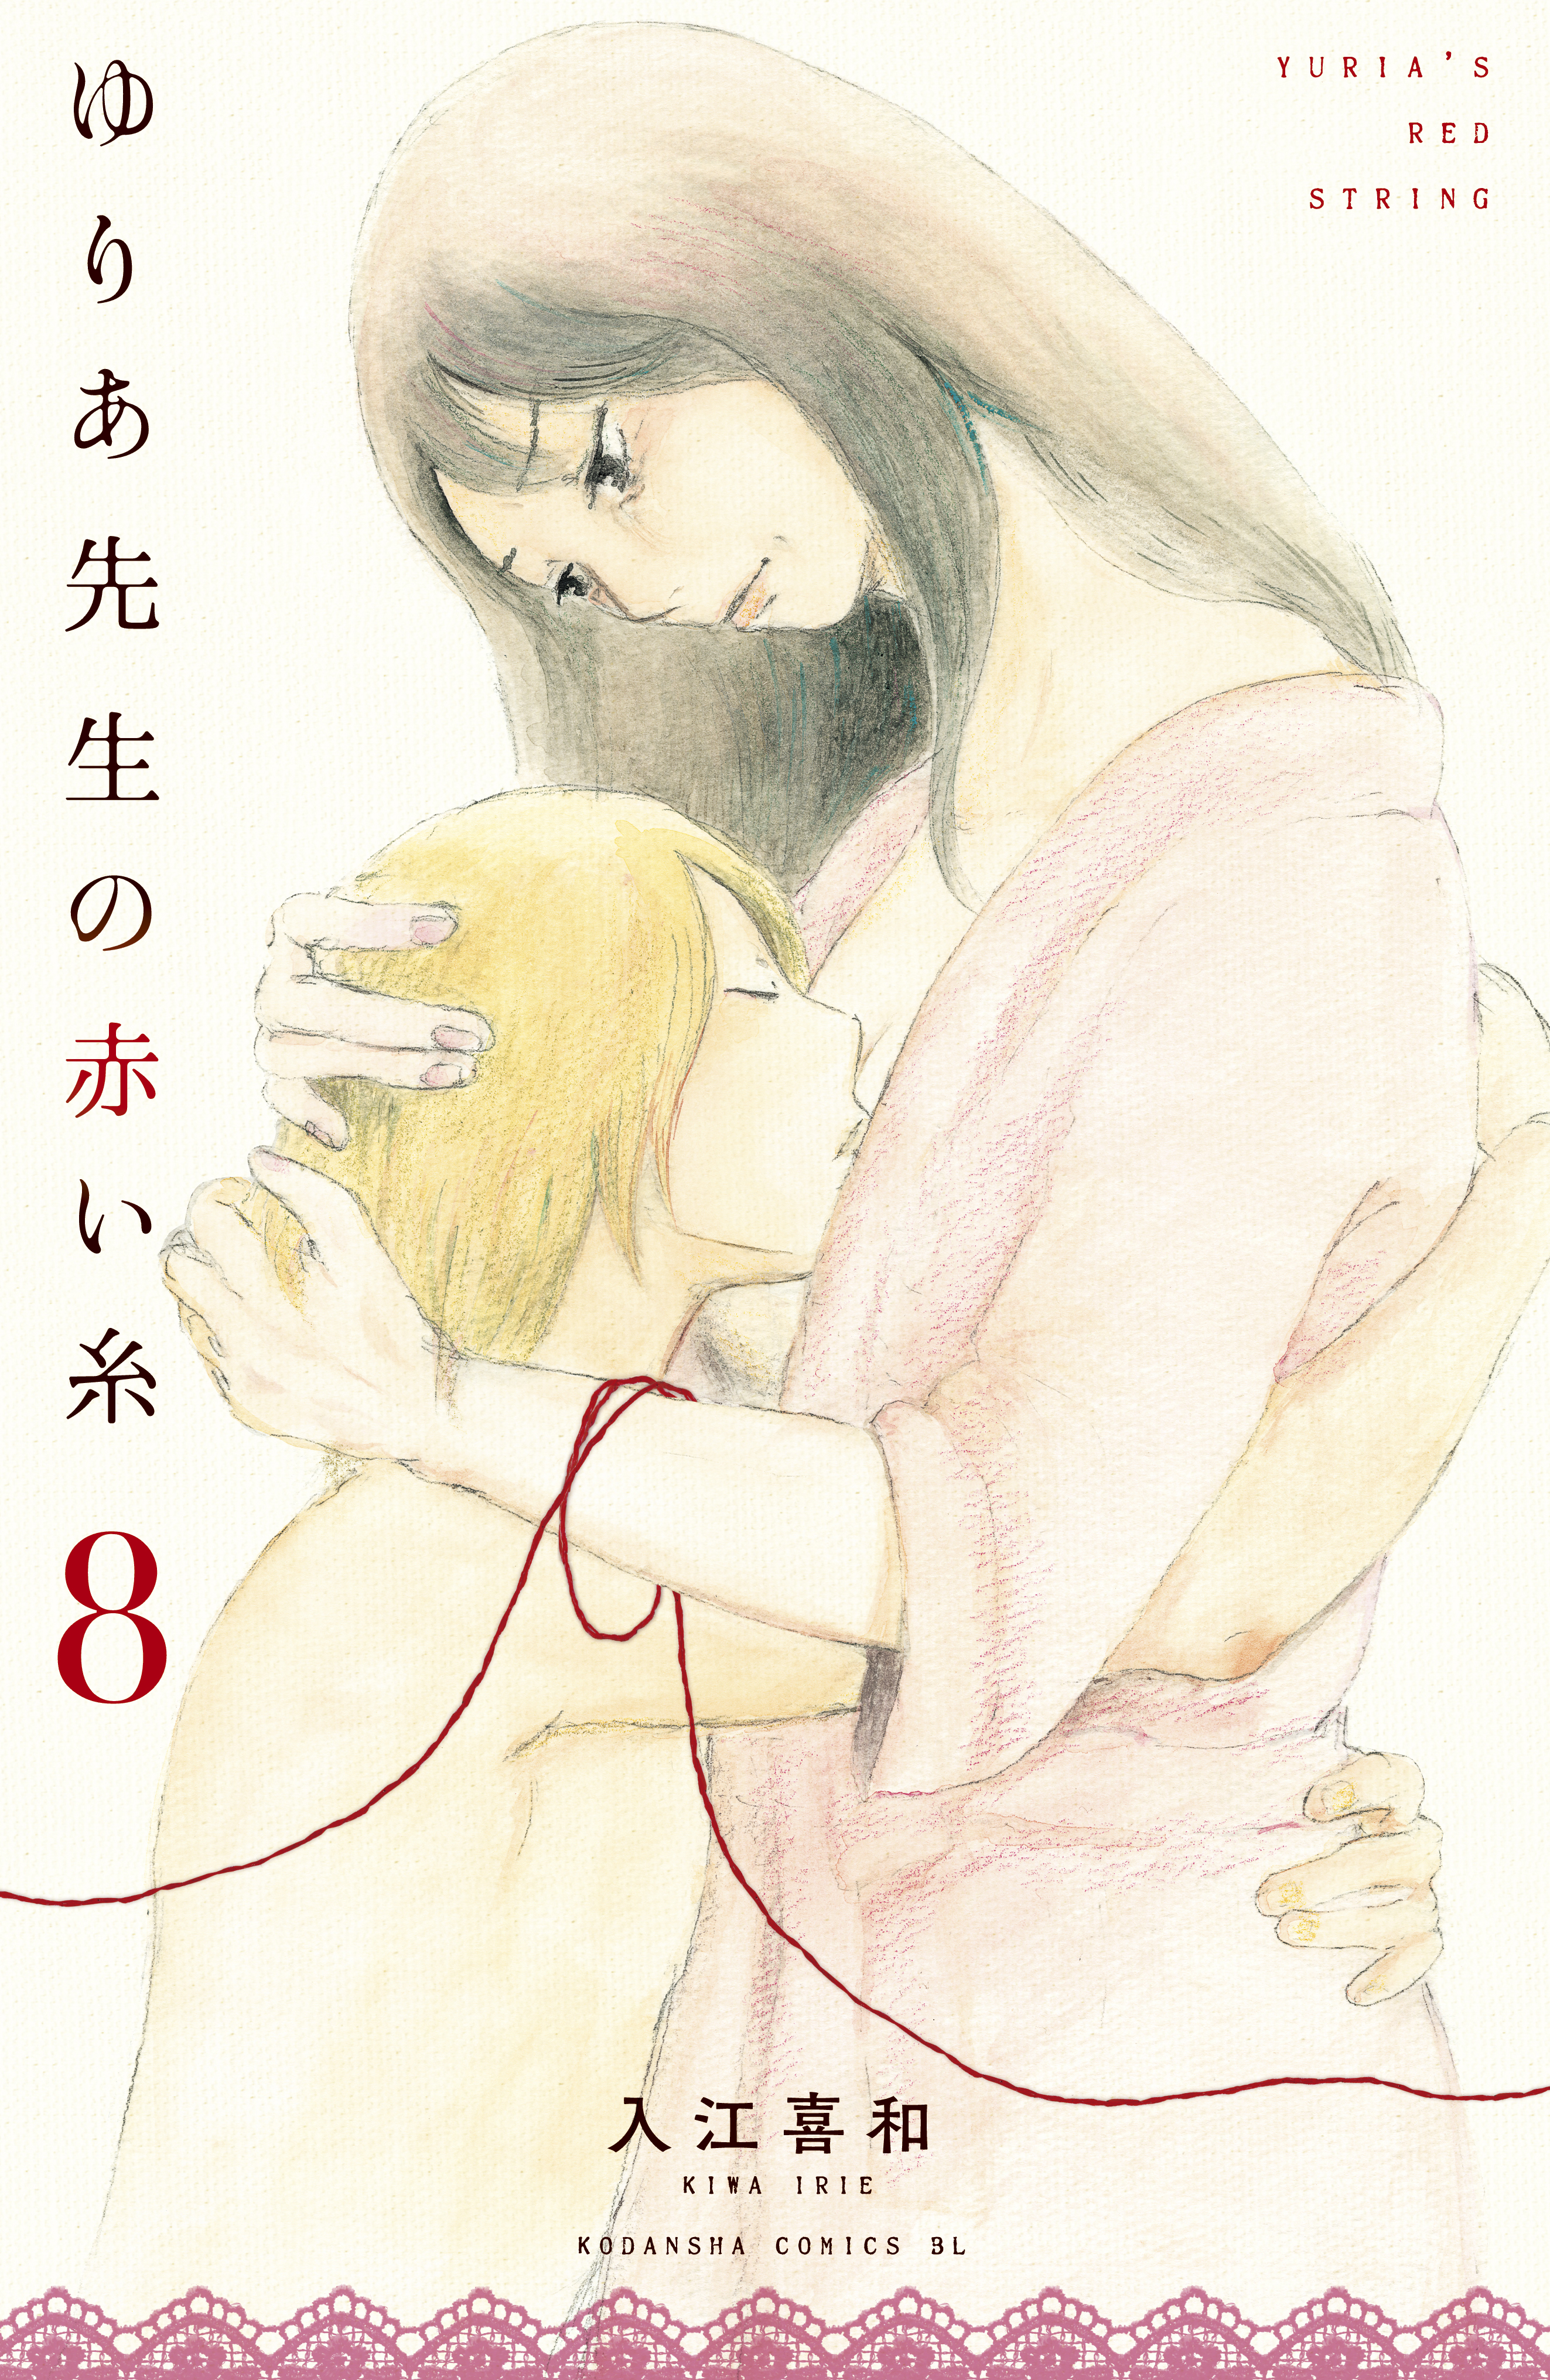 漫画コミックス『ゆりあ先生の赤い糸』1,2,3巻セット 最新